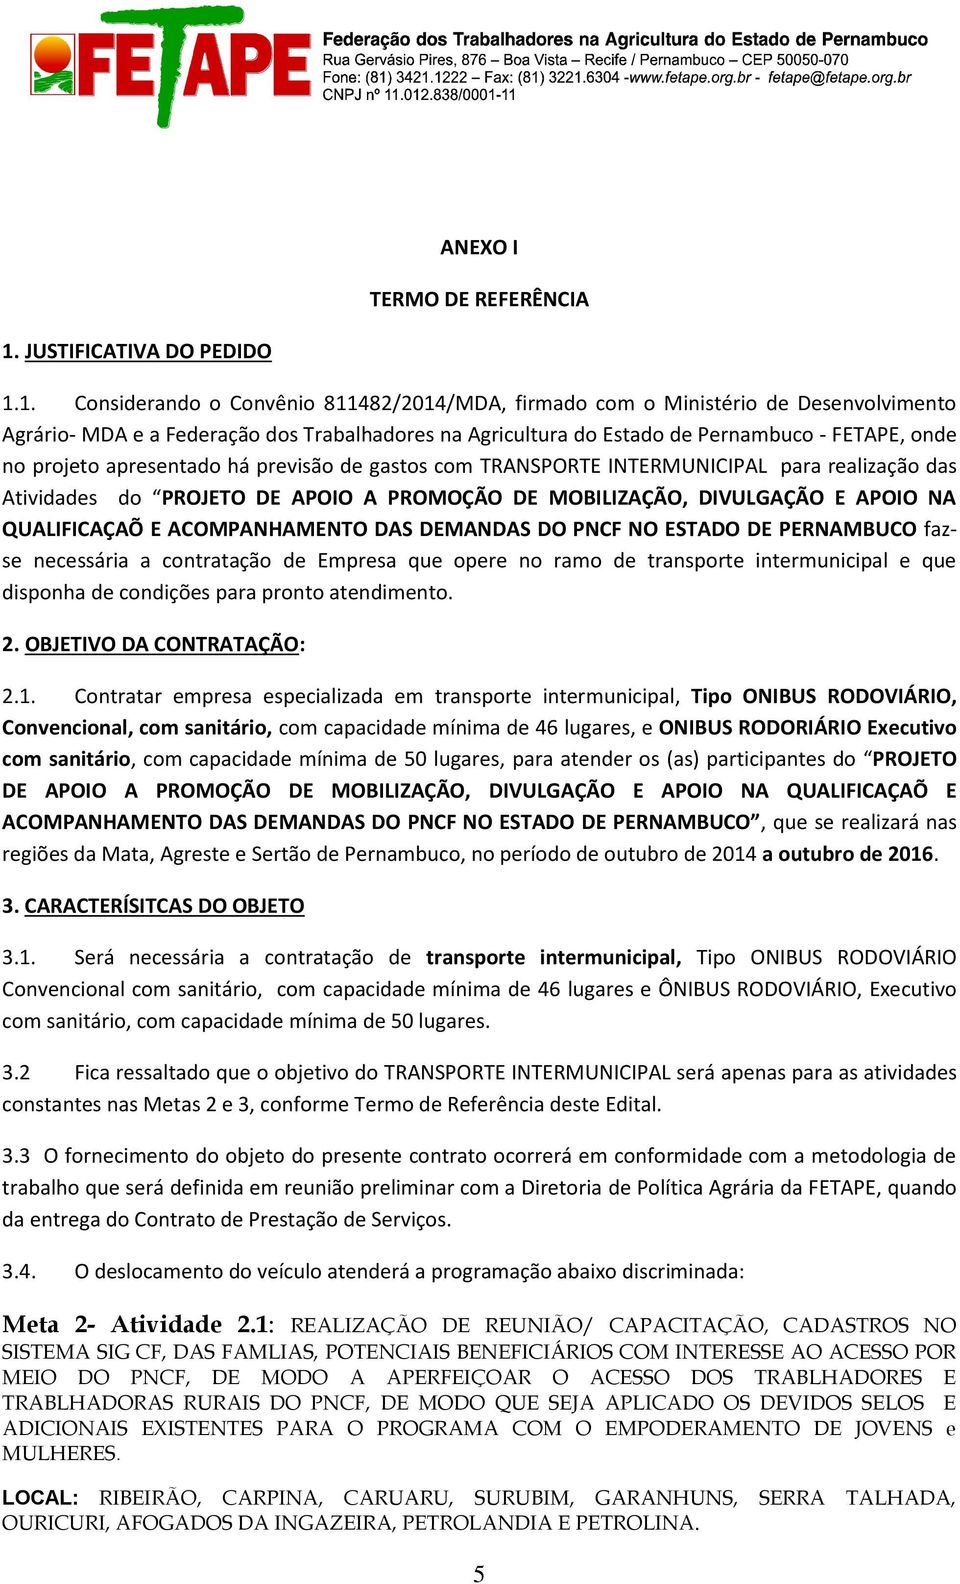 1. Considerando o Convênio 811482/2014/MDA, firmado com o Ministério de Desenvolvimento Agrário- MDA e a Federação dos Trabalhadores na Agricultura do Estado de Pernambuco - FETAPE, onde no projeto